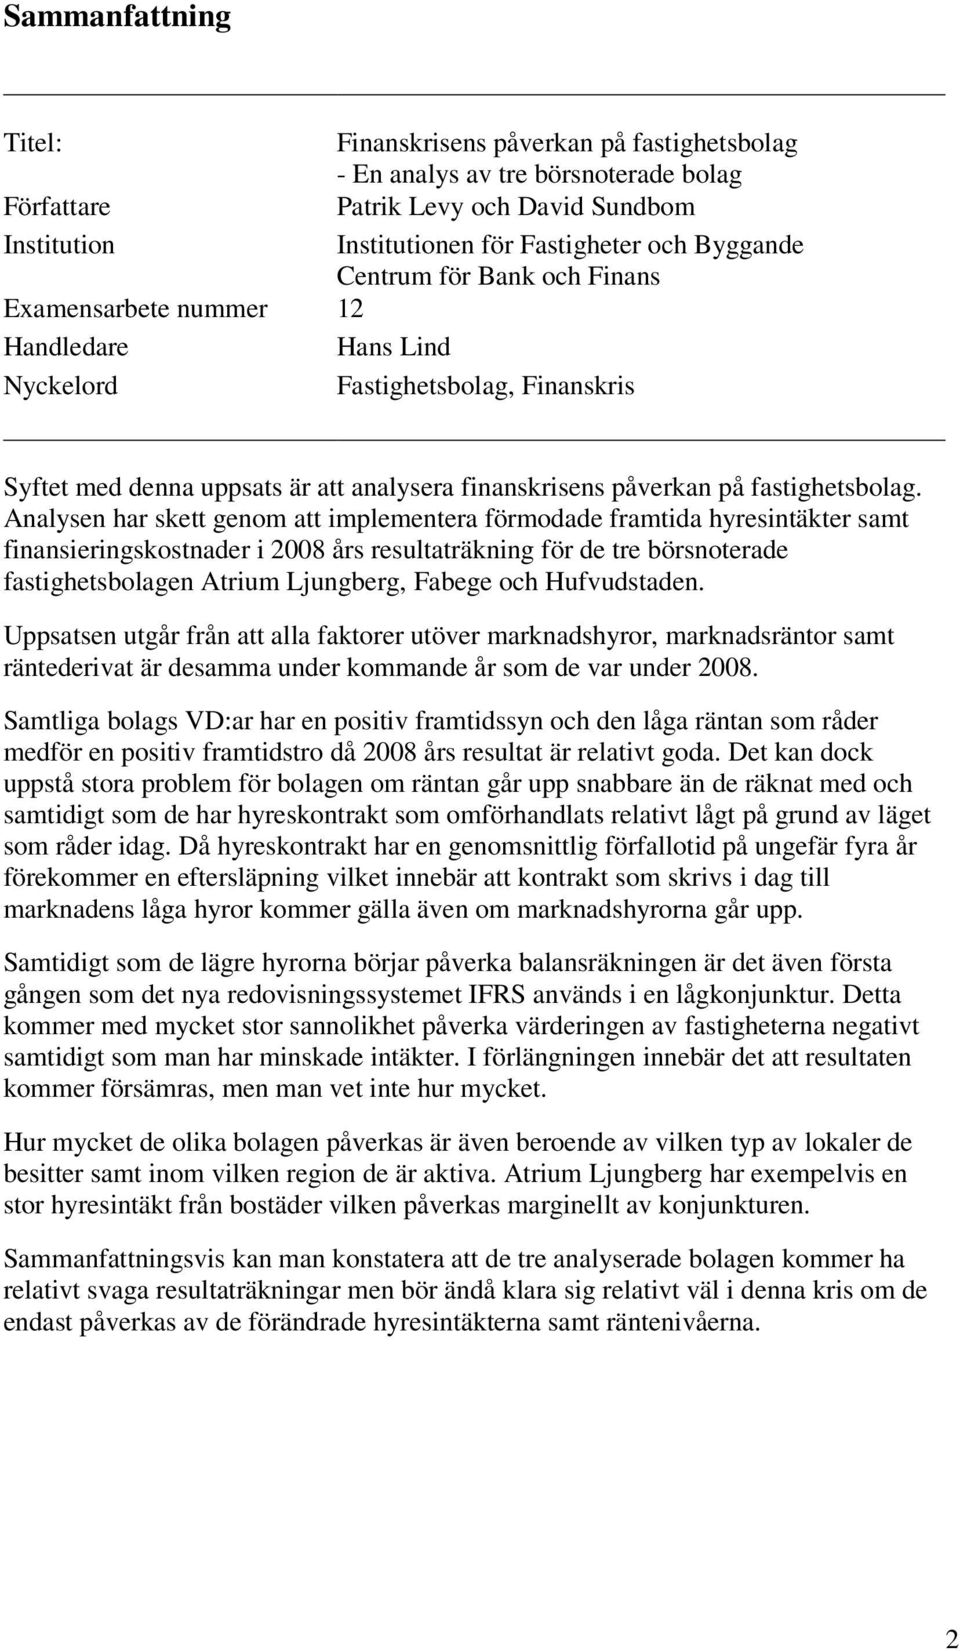 Analysen har skett genom att implementera förmodade framtida hyresintäkter samt finansieringskostnader i 2008 års resultaträkning för de tre börsnoterade fastighetsbolagen Atrium Ljungberg, Fabege